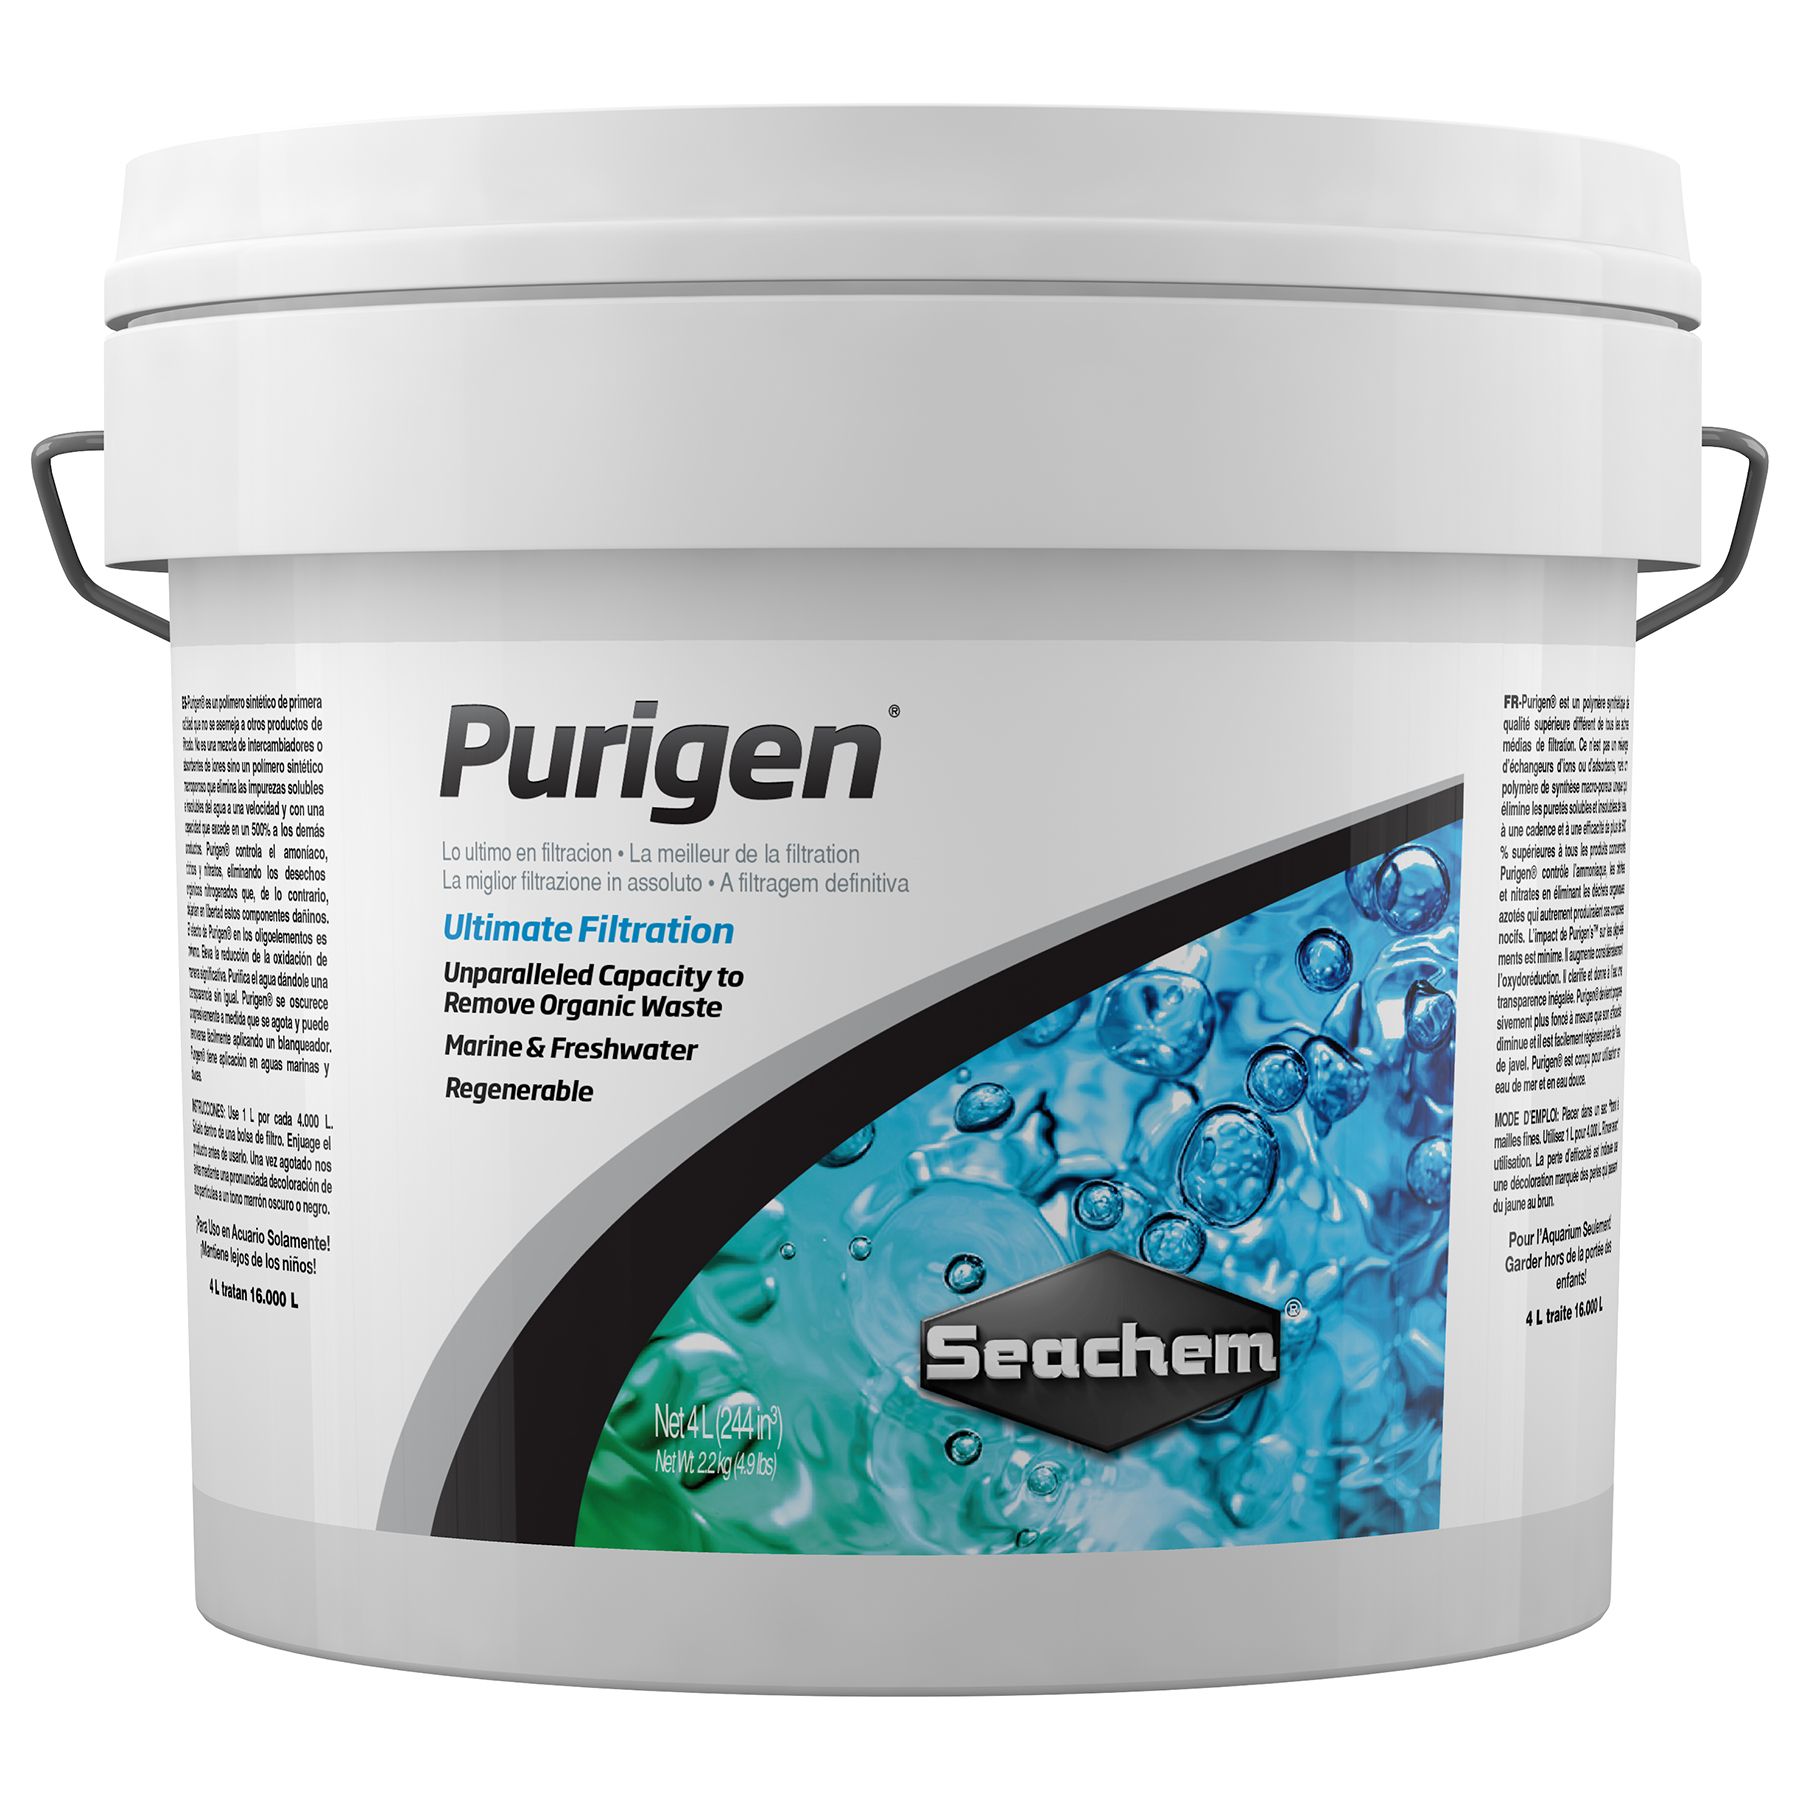 Seachem Purigen - Aquatia